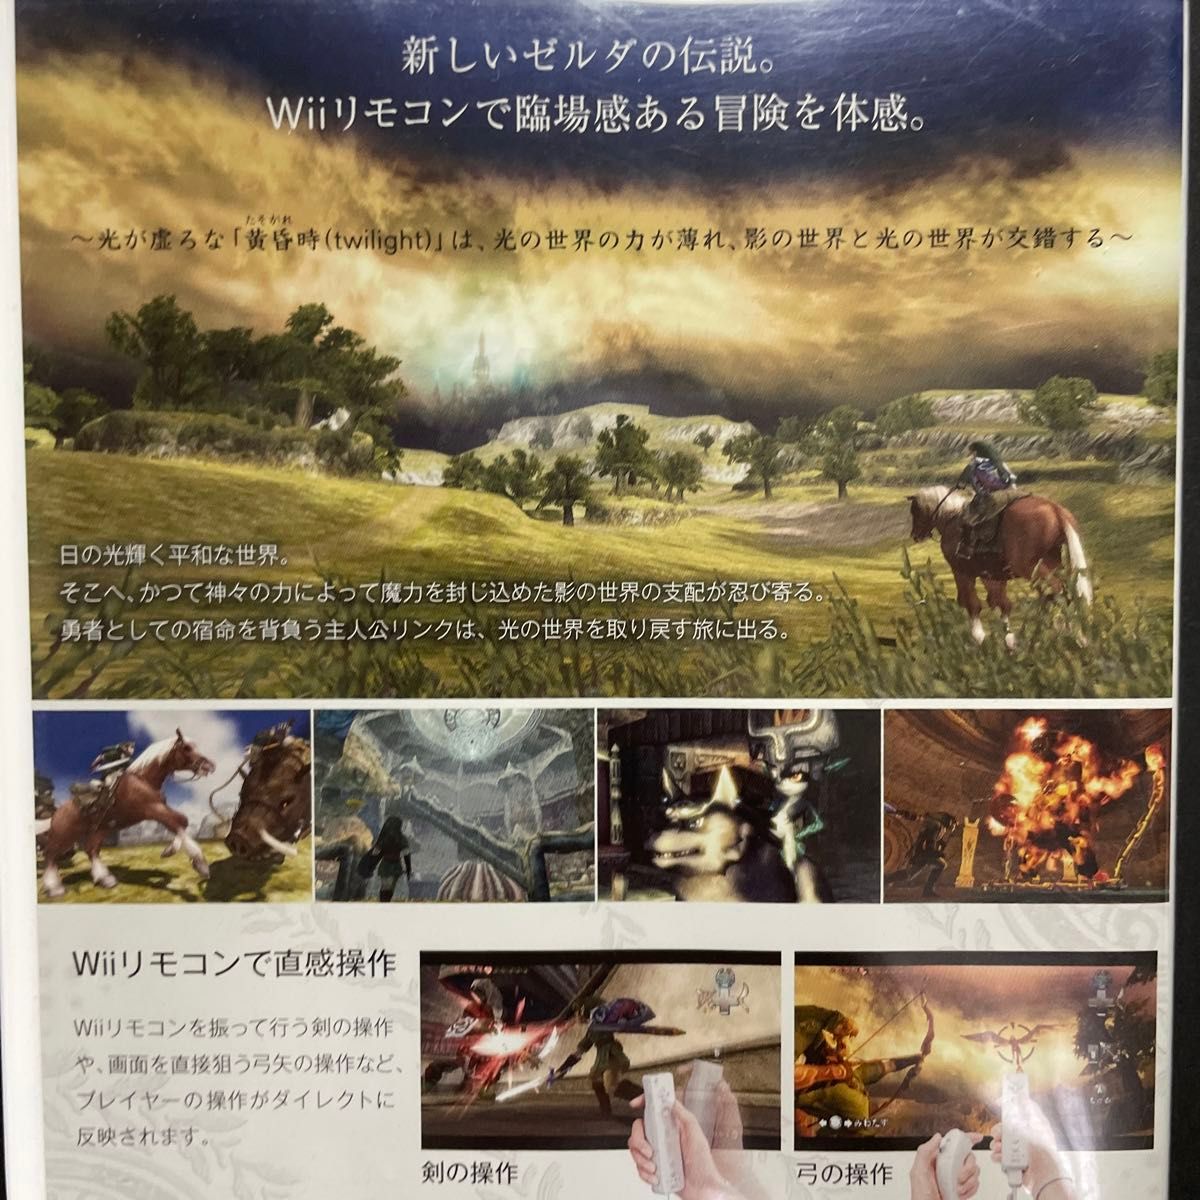 【Wii】 ゼルダの伝説 スカイウォードソード トワイライトプリンセス  2本まとめ セット